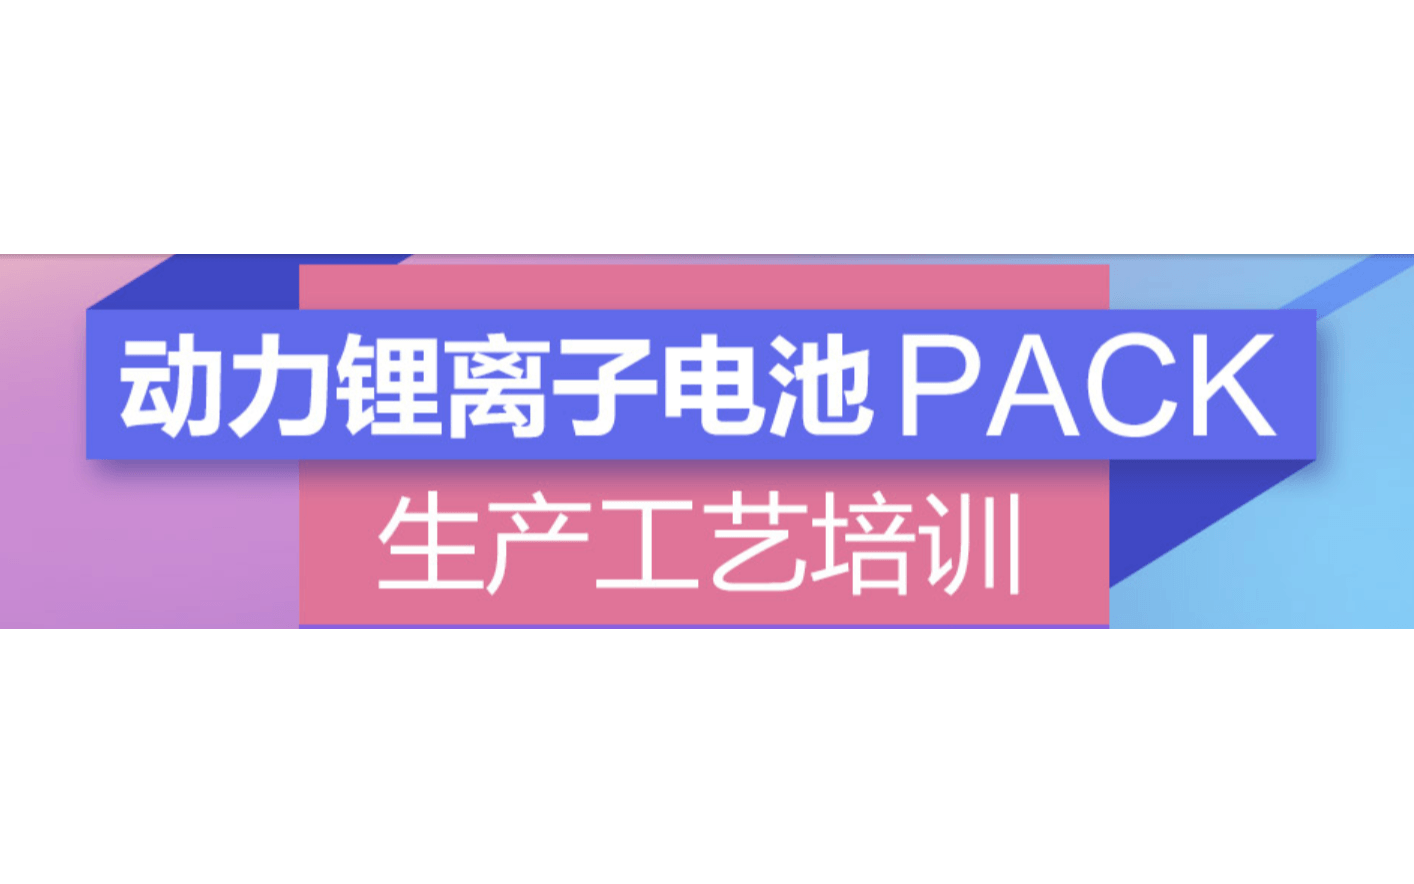 锂电池系统生产、设计和应用技术交流会暨动力电池PACK工艺培训（10月天津）